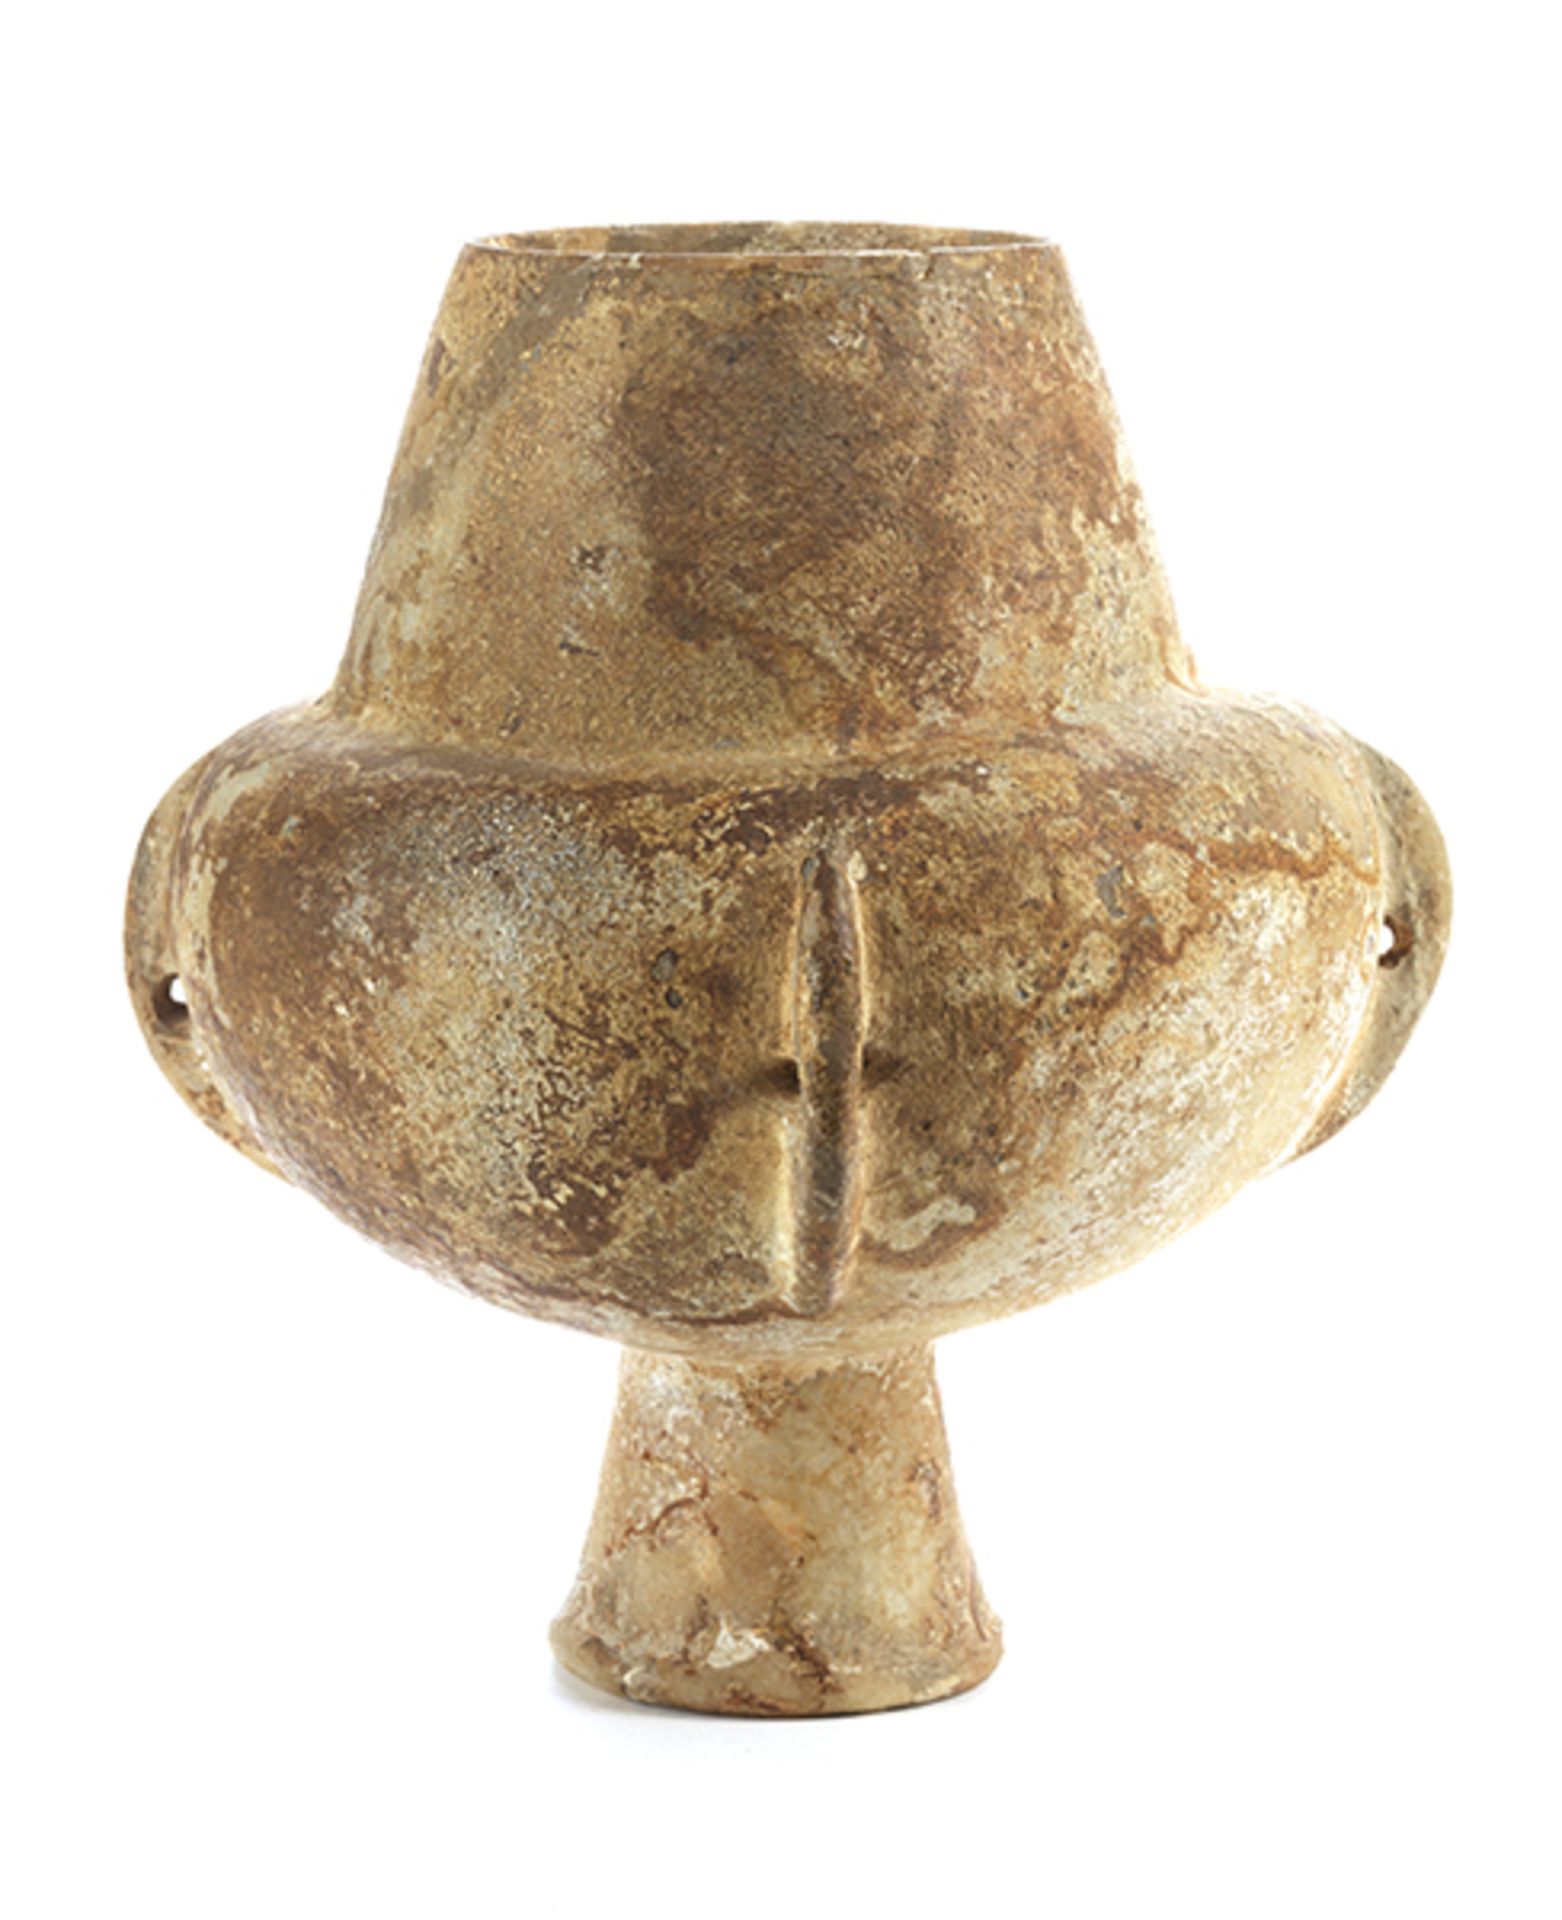 Kykladische Kandila "" Vierhenkel-Vase Höhe: 24 cm. Durchmesser: 20 cm. 3.200 "" 2.800 v. Chr. - Bild 3 aus 6